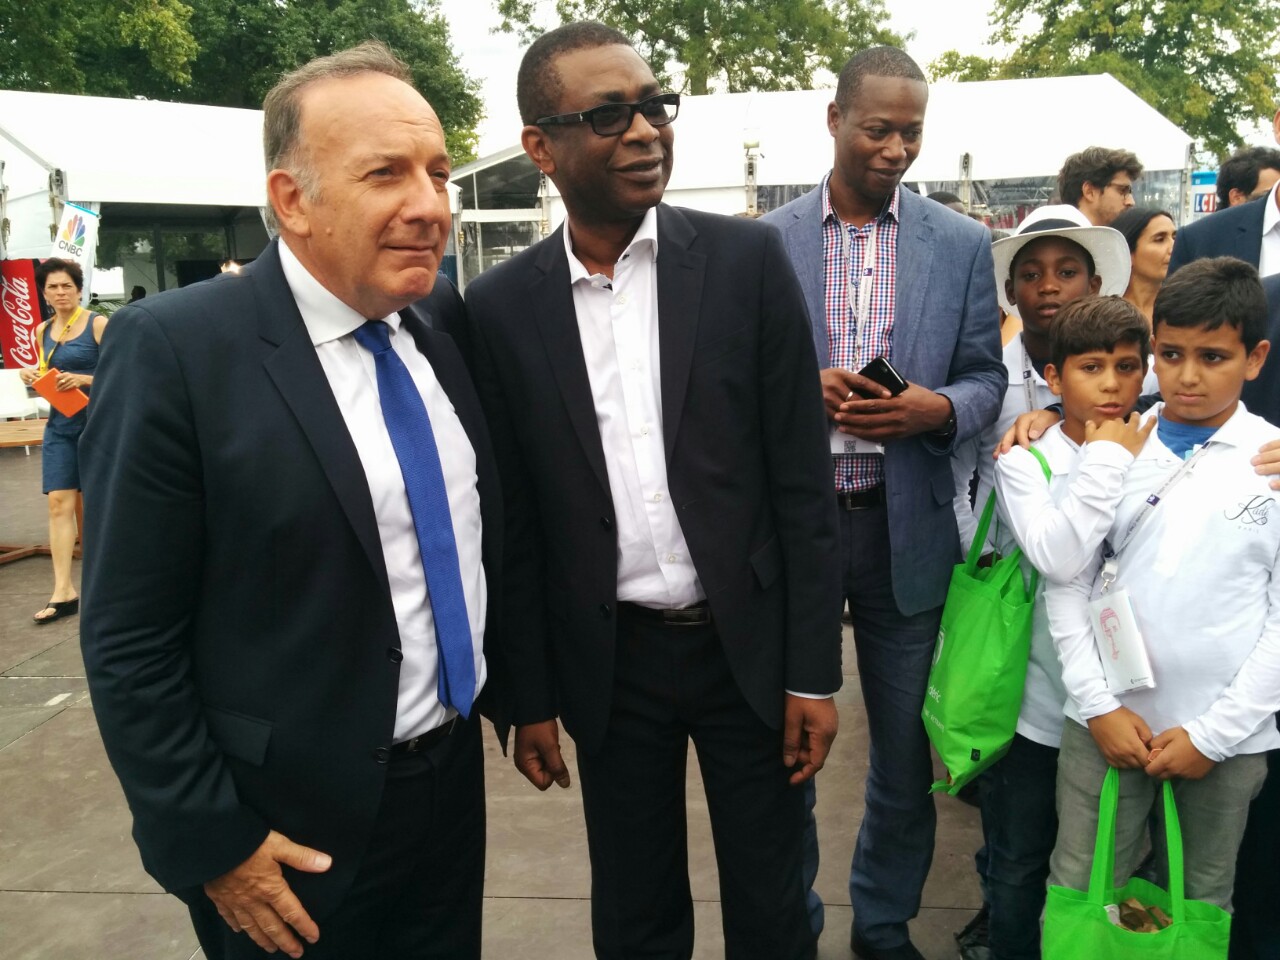 Université d'été du Medef - Youssou Ndour: "Maintenant les jeunes africains vont à Istanbul ou Dubaï. Paris ne fait plus rêver" (Photos - Vidéo)